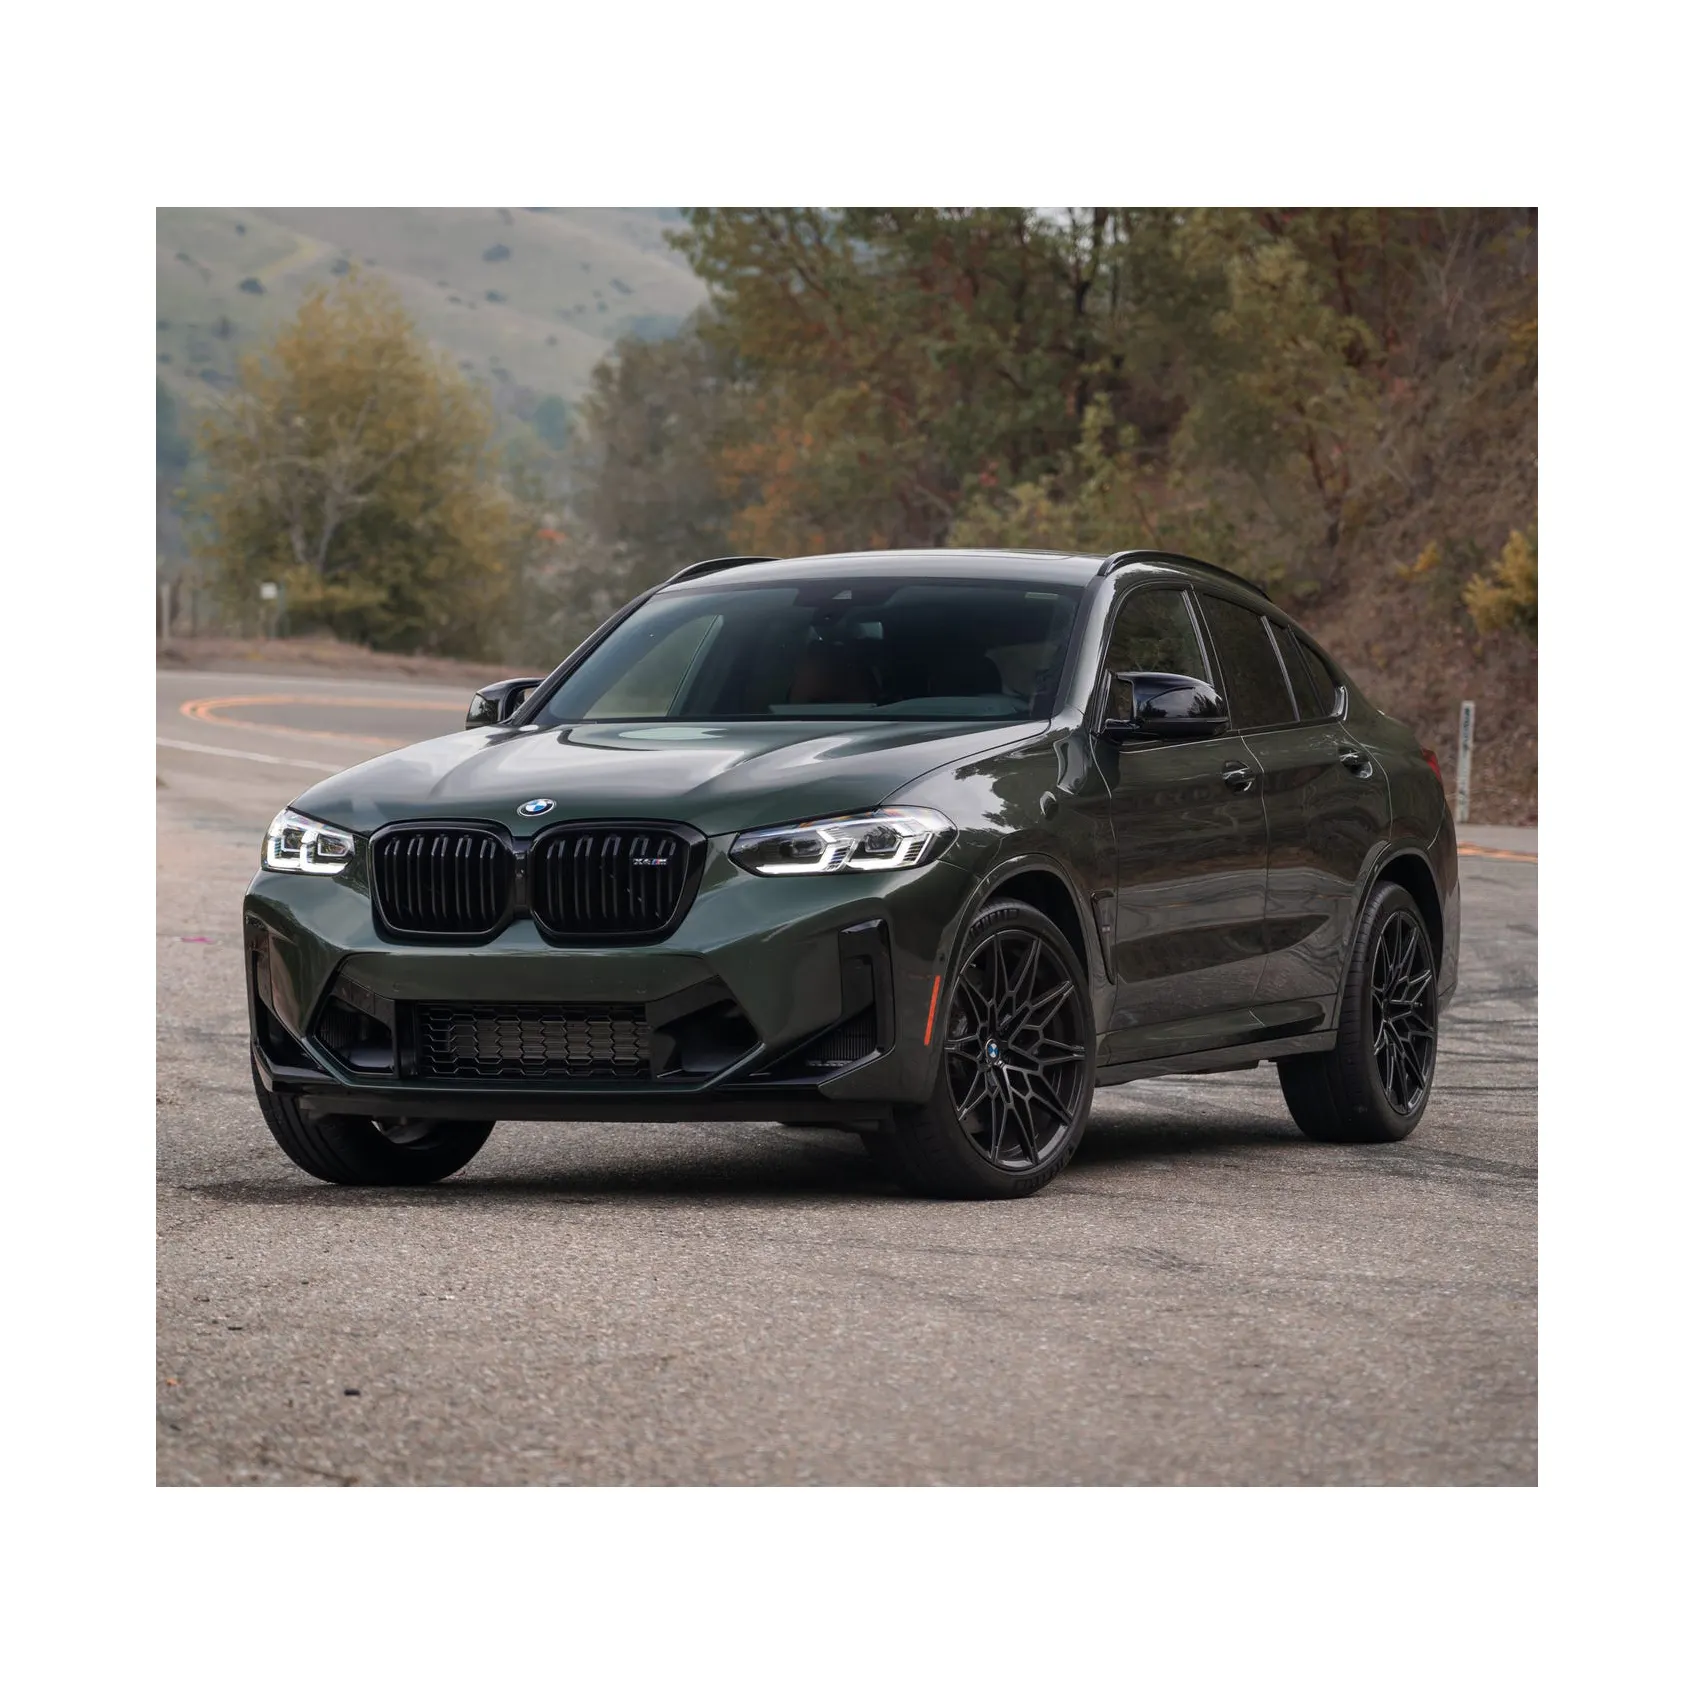 سيارة BMW X4 M مستعملة طراز 2019 للبيع بسعر جيد سيارة BMW X4 M مستعملة طراز 2019